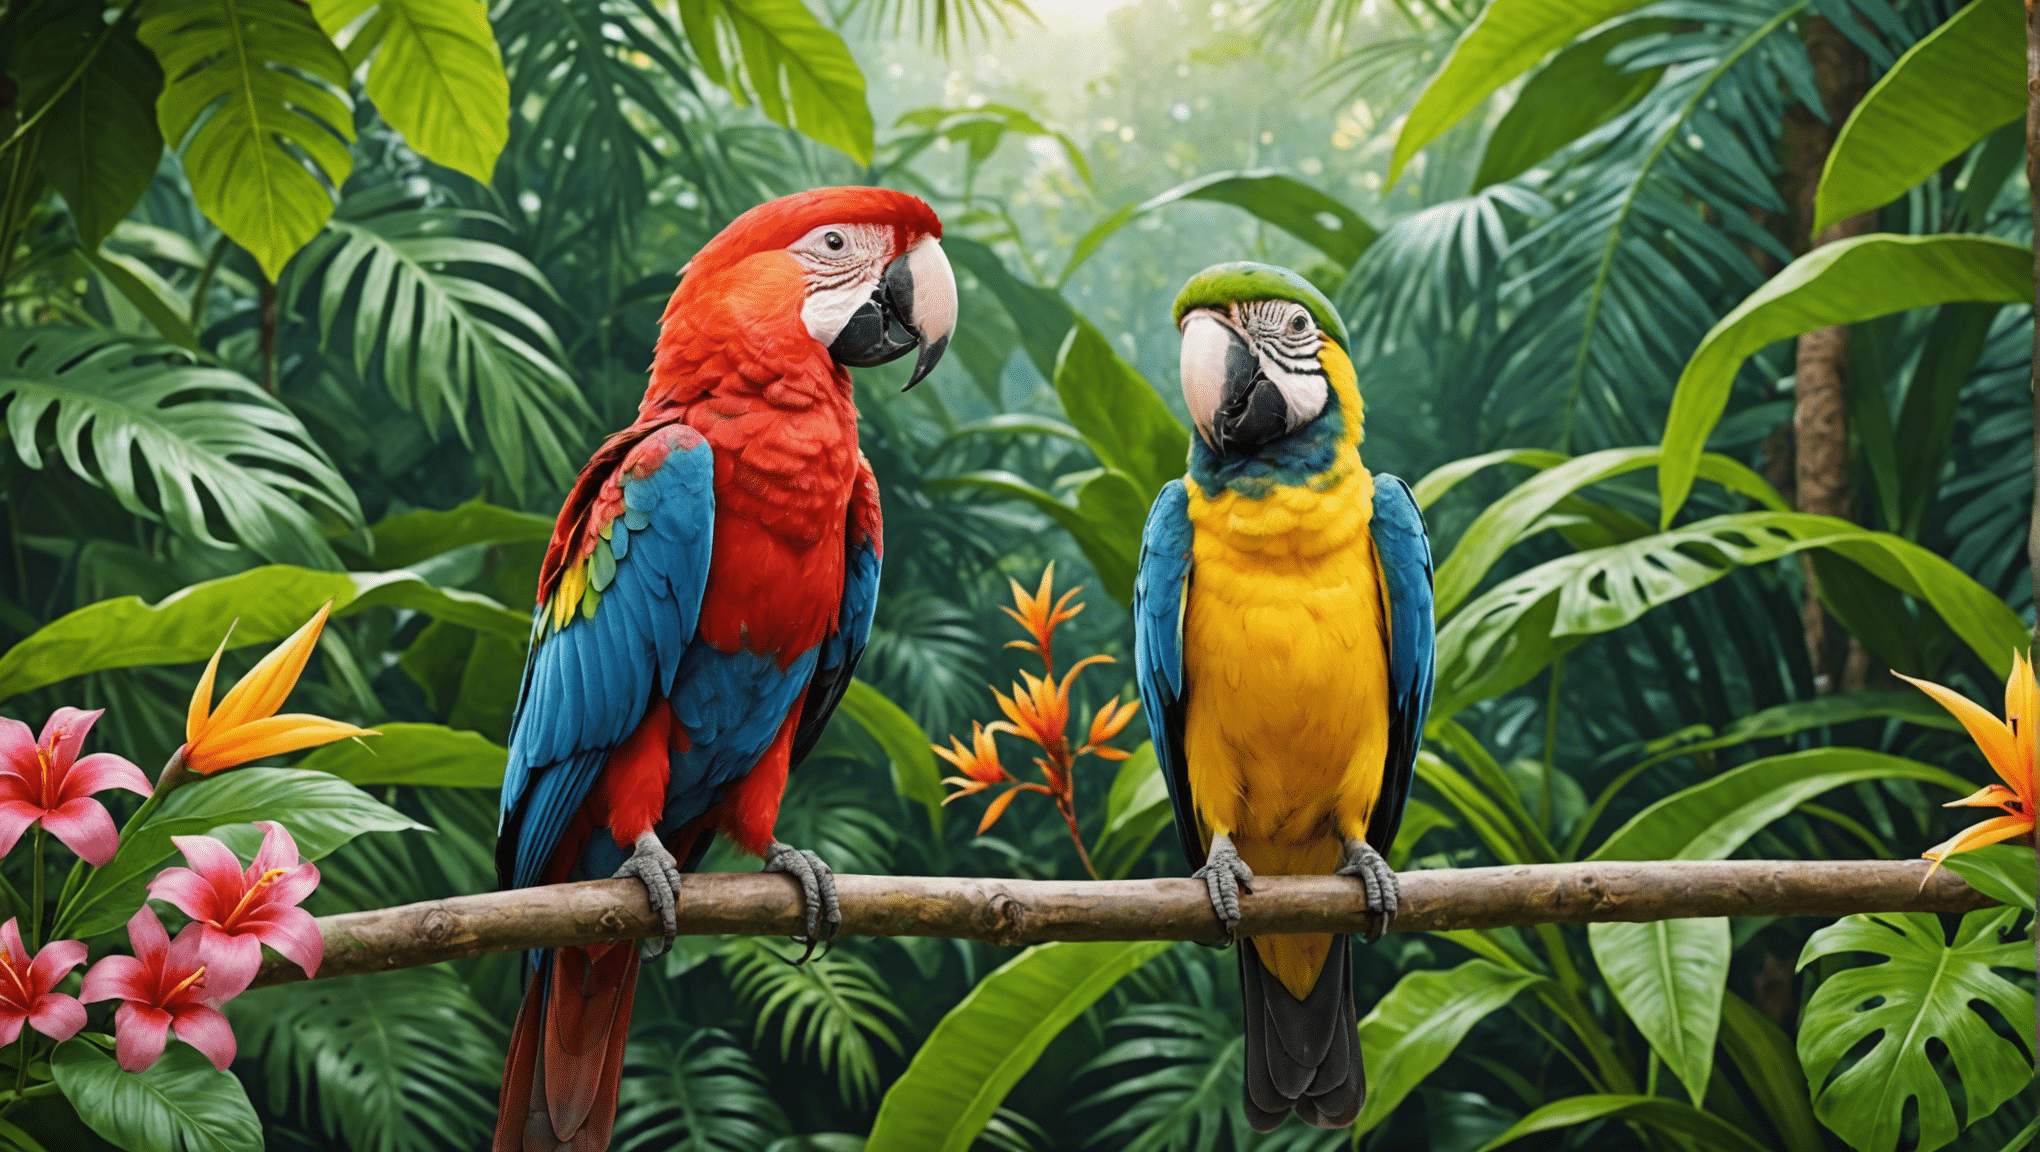 explore o mundo encantador dos pássaros tropicais com nossa fascinante coleção de artigos e imagens.